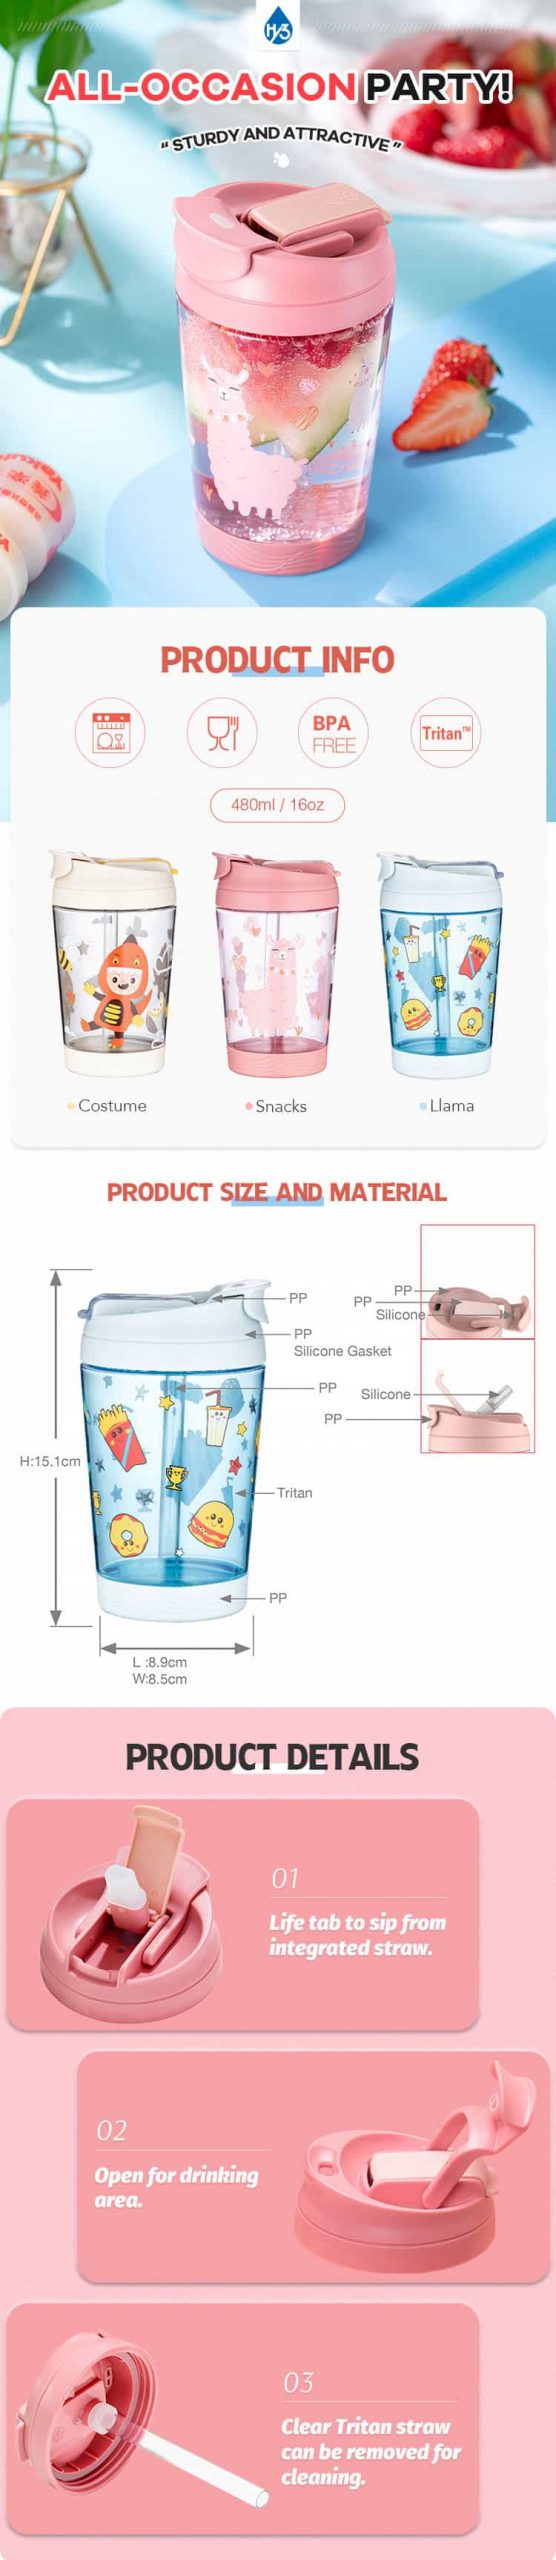 480ml/16oz Tritan Plastic BPA-free Mug for Kids- Party #6920300302